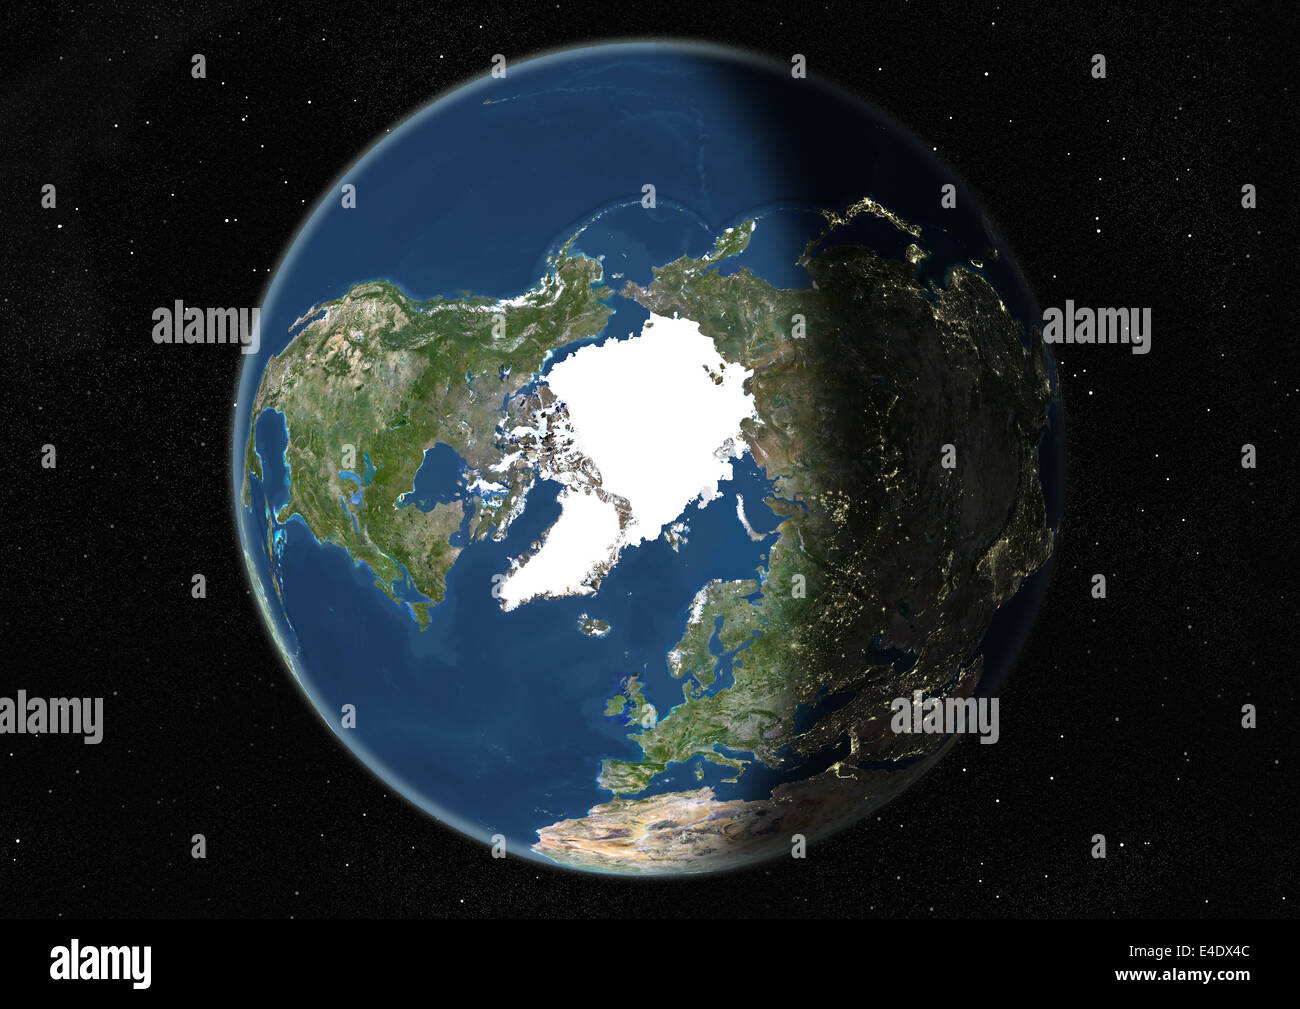 Mondo centrato sul polo nord, True Color immagine satellitare. True color  Immagine satellitare della terra centrata sul polo nord Foto stock - Alamy